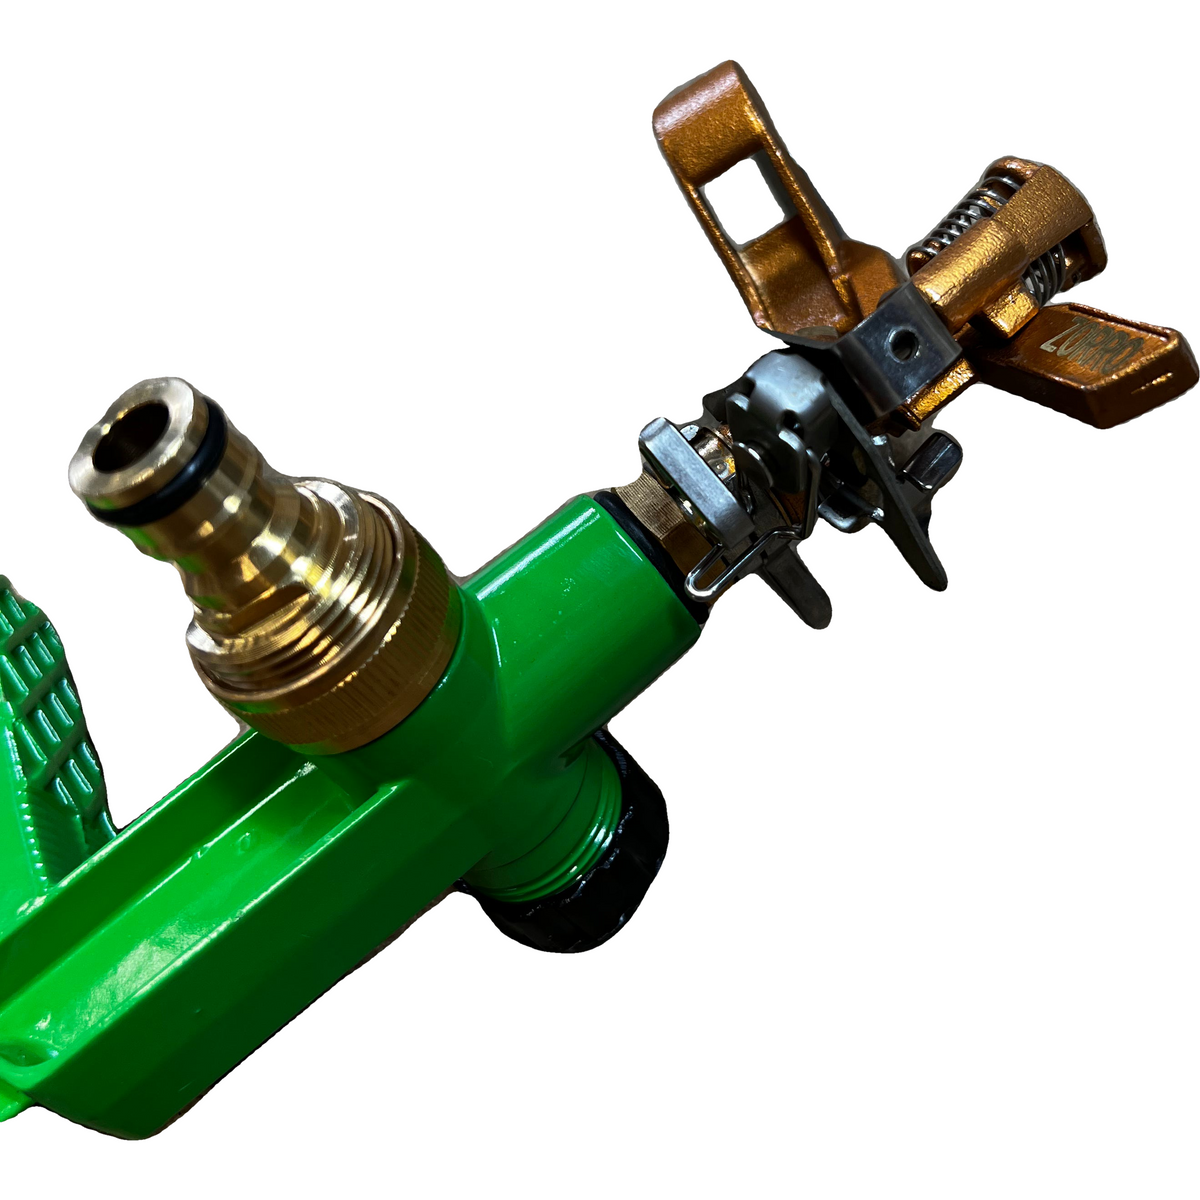 ZORRO Brass Impact Sprinkler with Heavy-Duty Step Spike